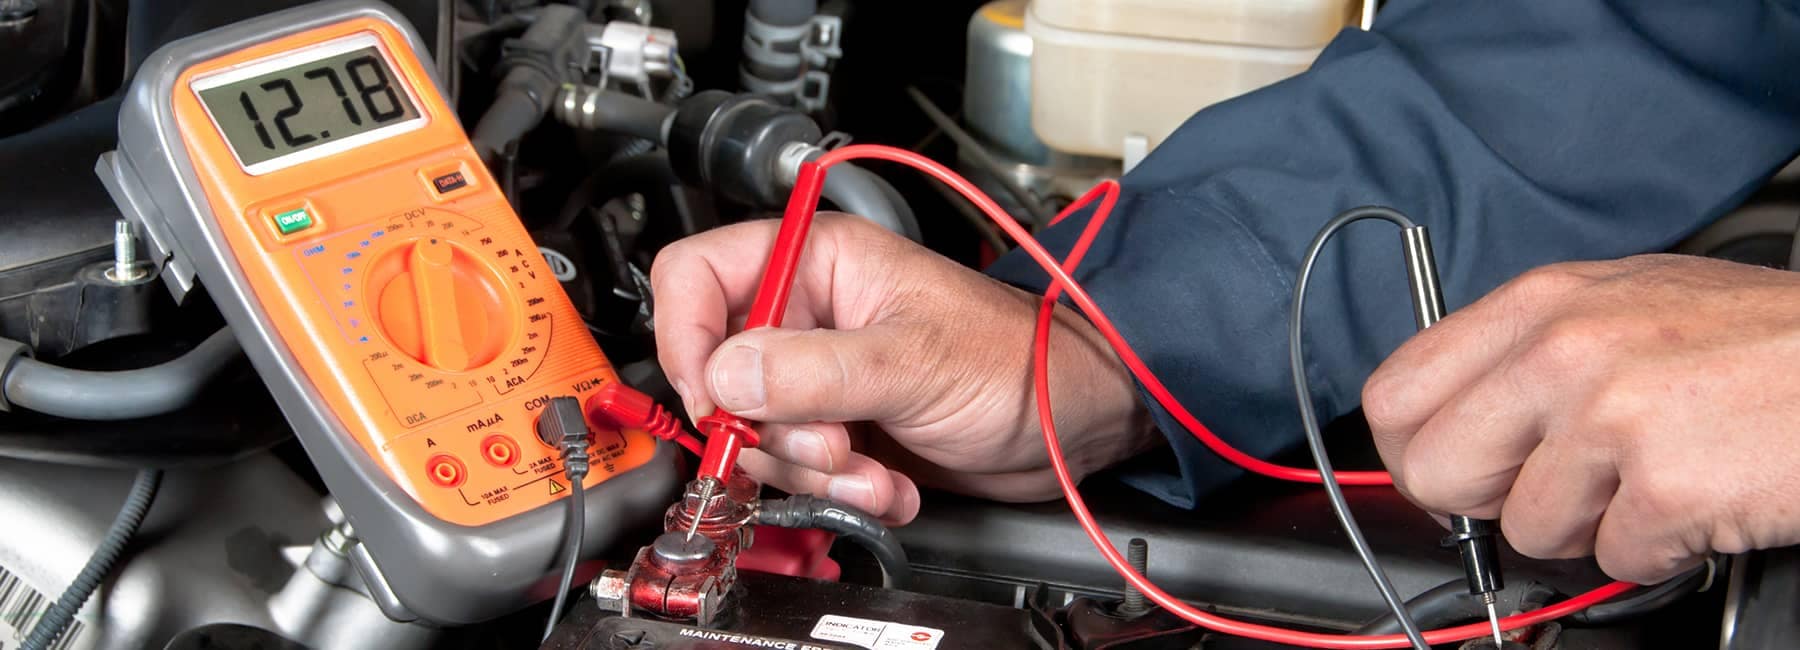 technician checks car battery power